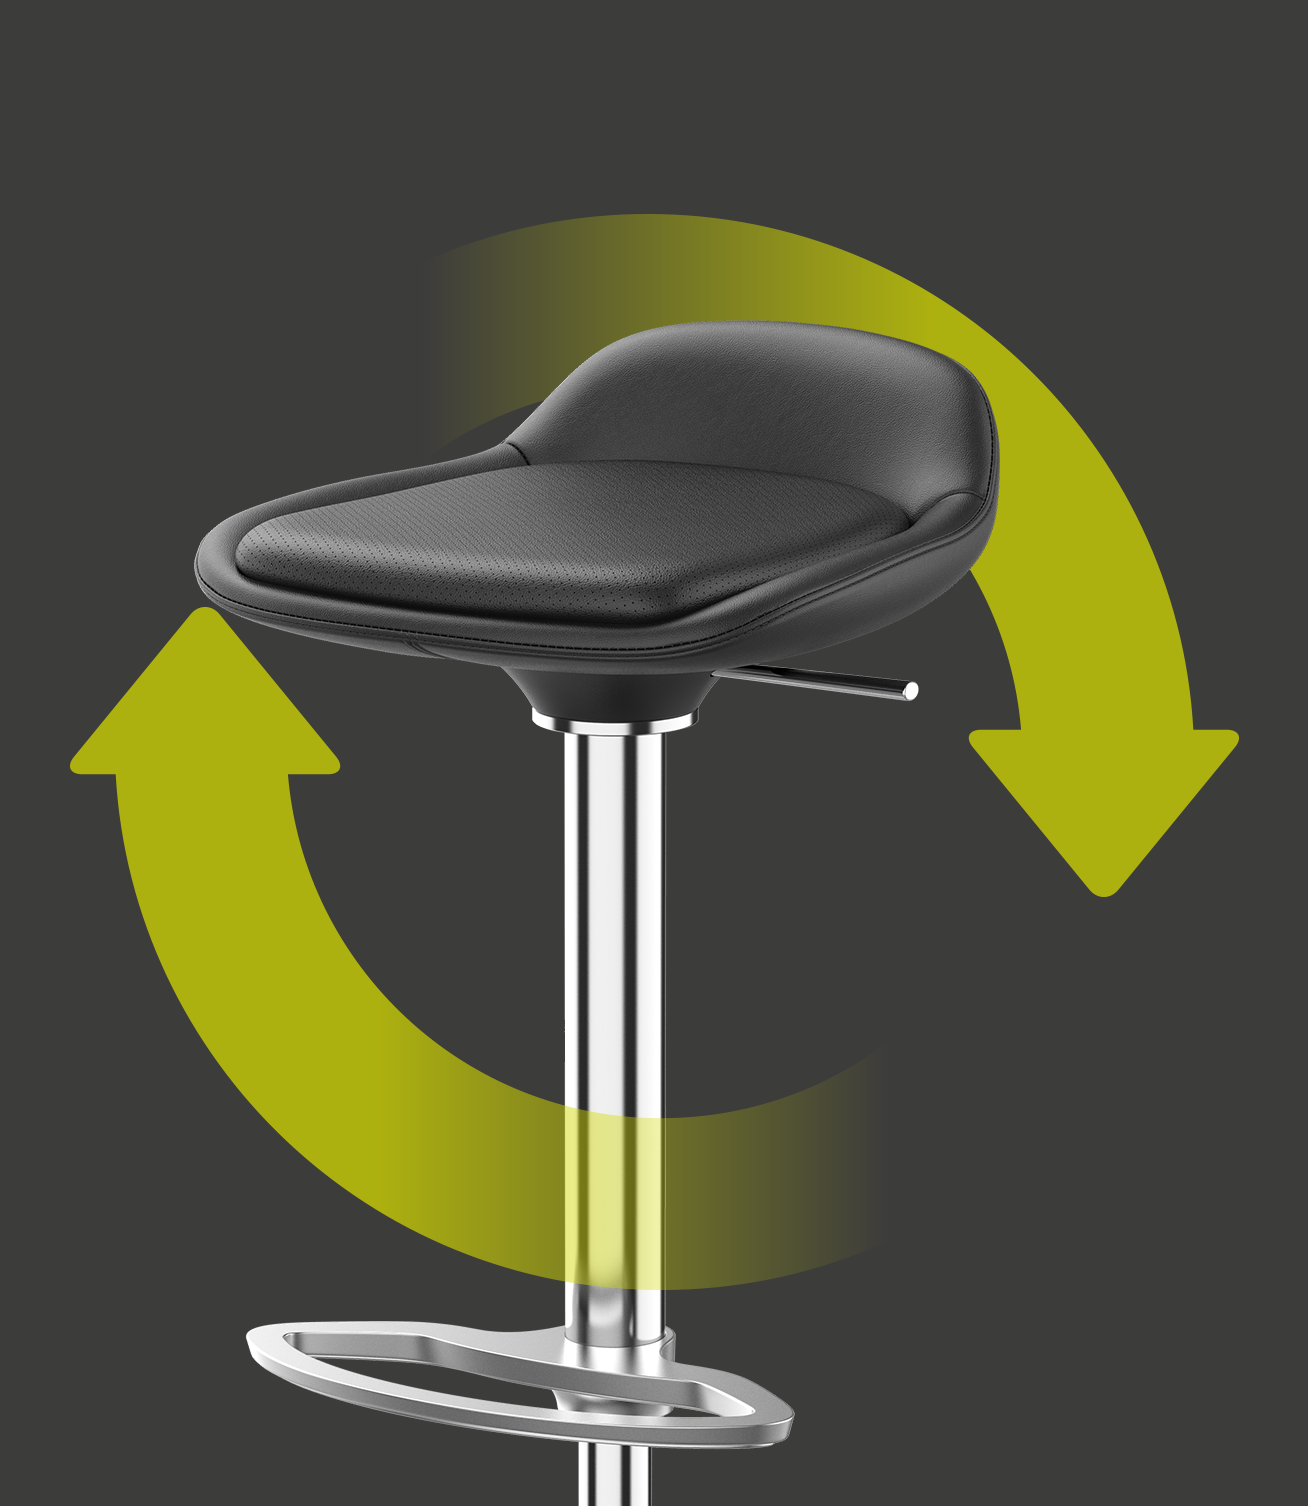 Eleganter Barhocker LIME mit Sitz- und Rückenbezug aus schwarzem Leder sowie verchromtem Gestell, mit zwei grünen Pfeilen, die um den Hocker herum einen Kreis bilden. Dies weist auf die Nachhaltigkeit und Wiederverwendbarkeit des Stuhls hin | by studiokurbos